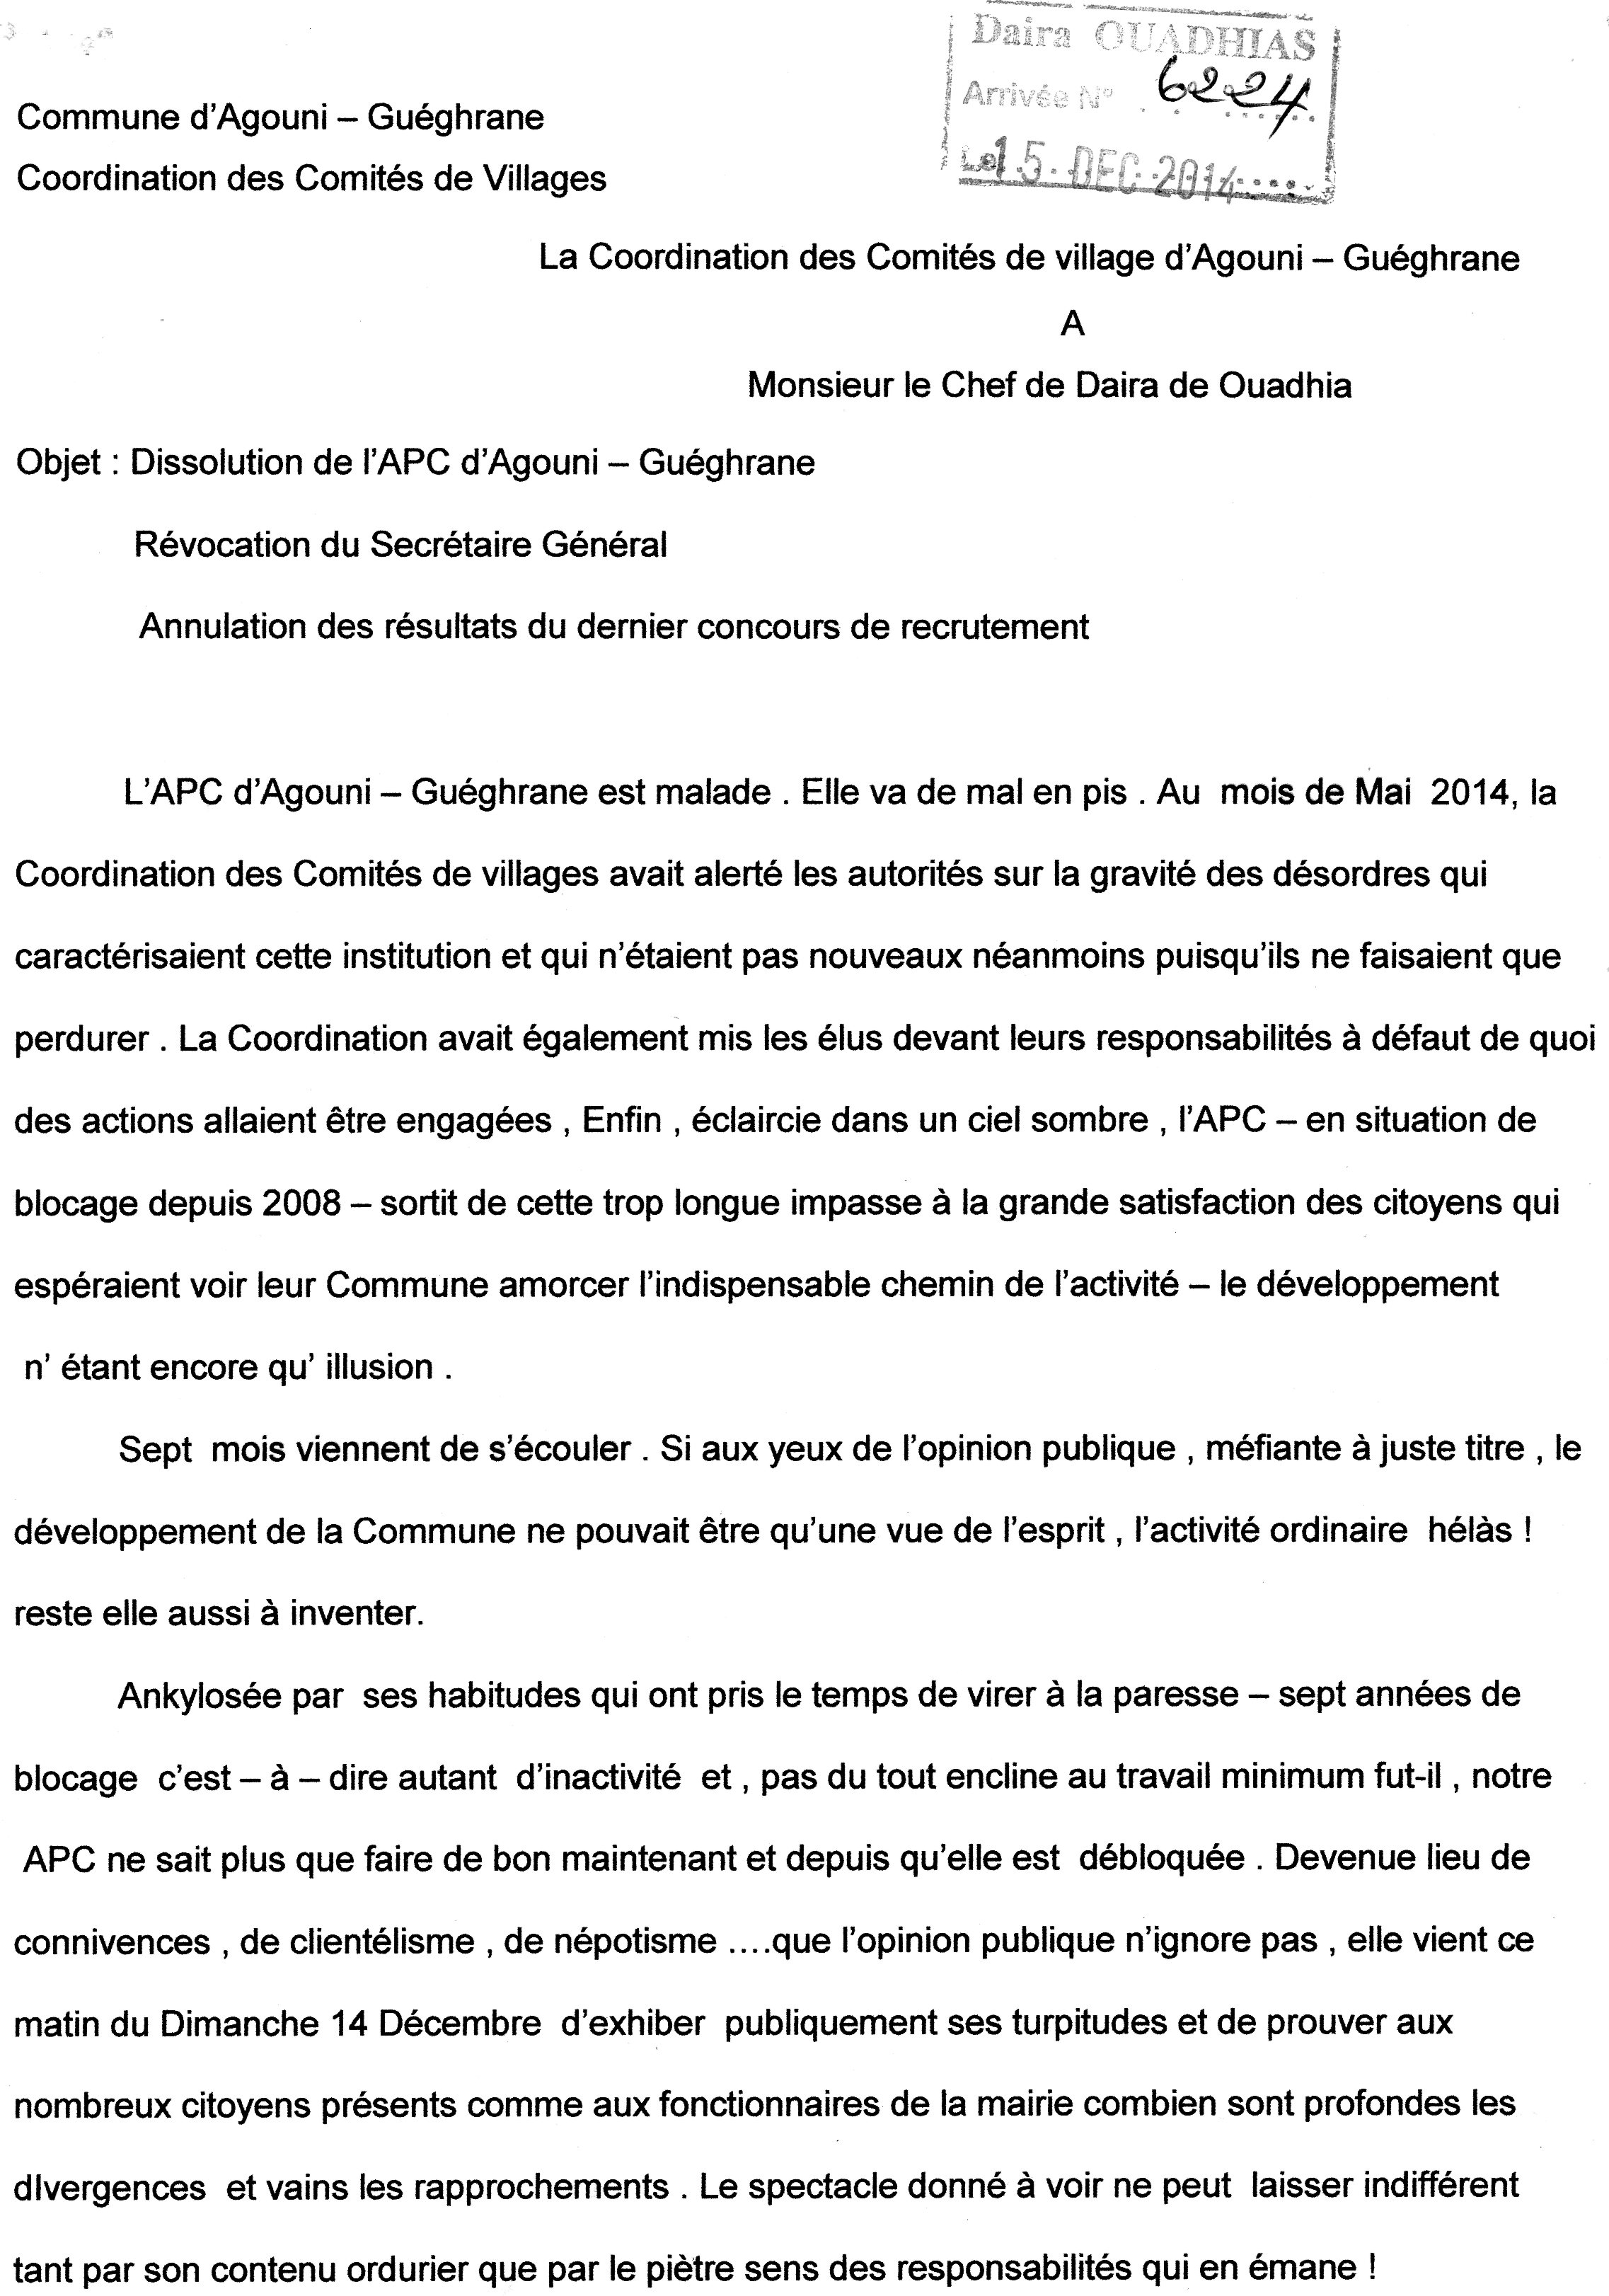 La coordination inter-village d'Agouni Gueghrane exige la dissolution de l'Assemblée populaire communale ( Mairie)